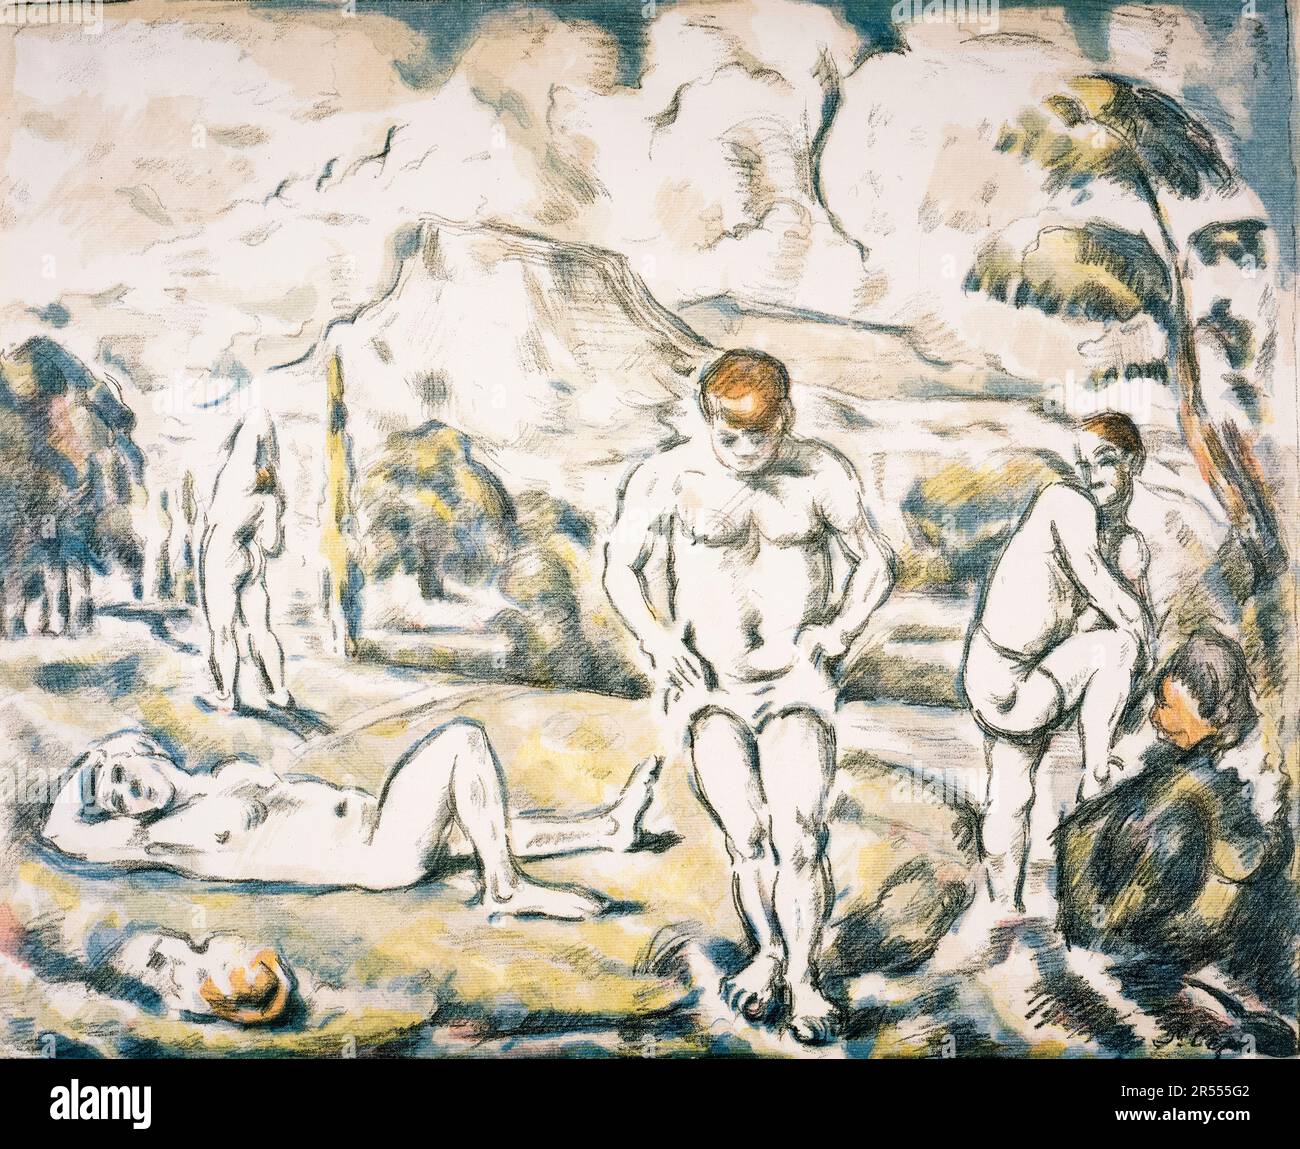 Paul Cezanne, i bagnanti, stampa litografica 1896-1897 Foto Stock